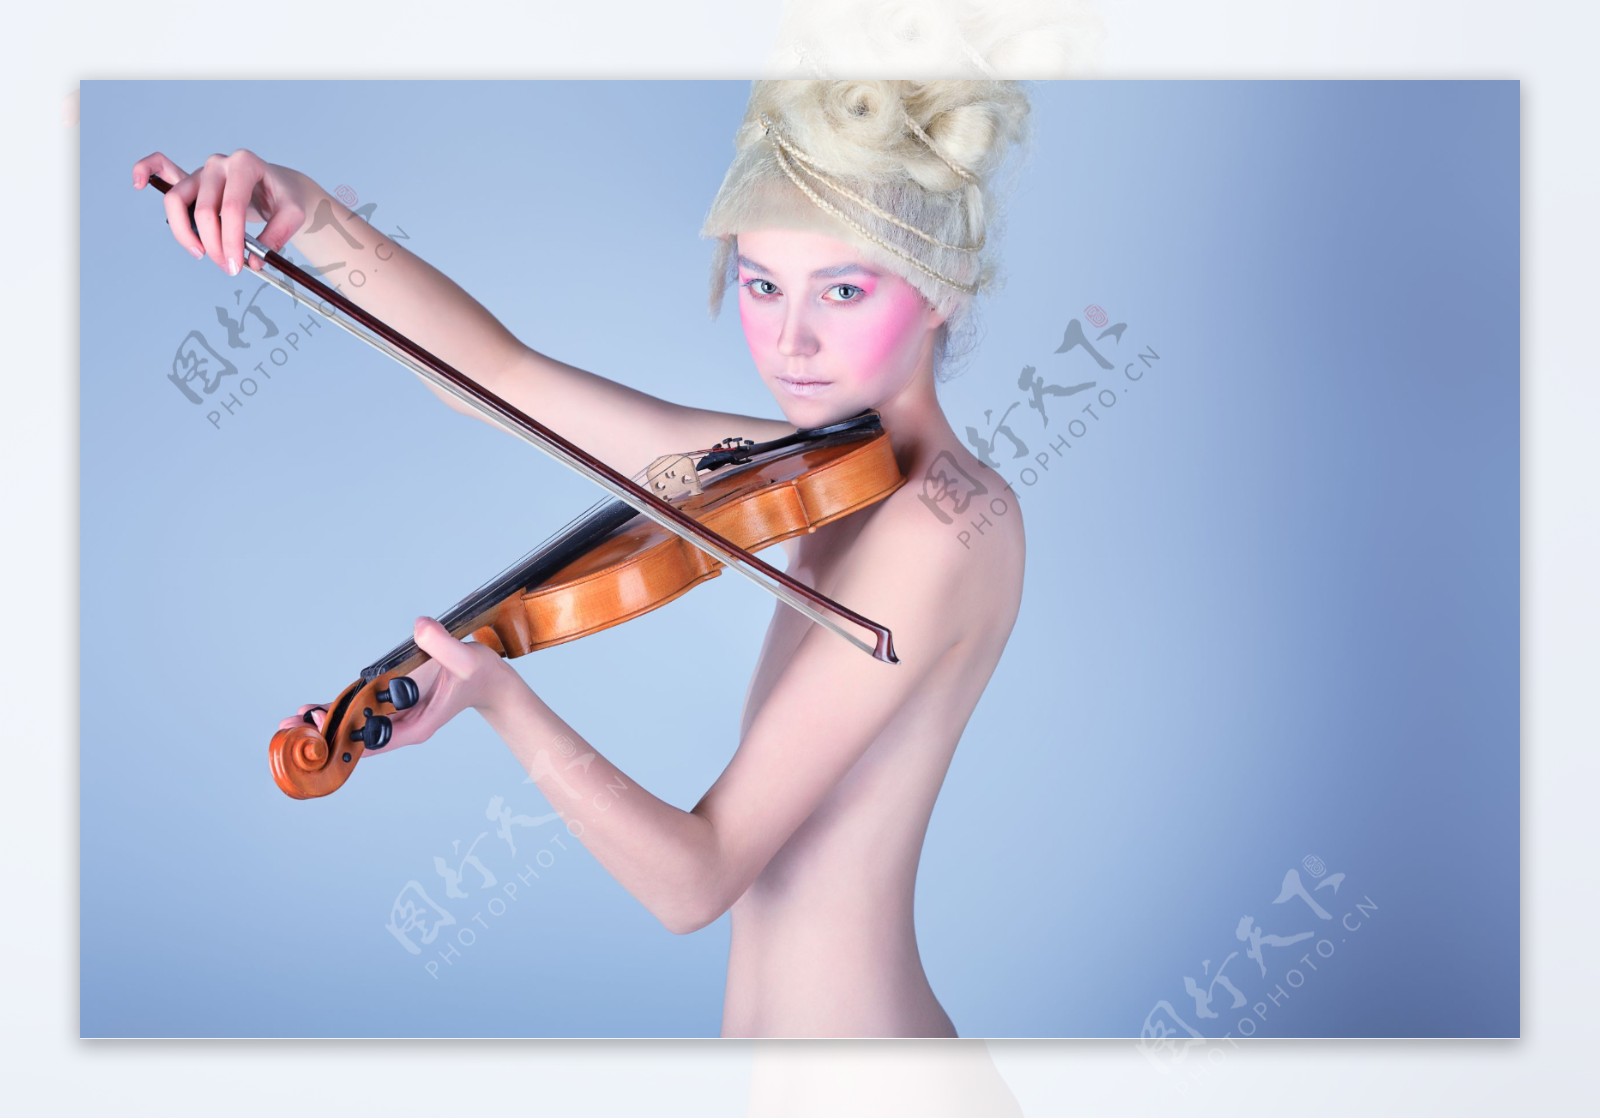 拉小提琴的金发女郎图片